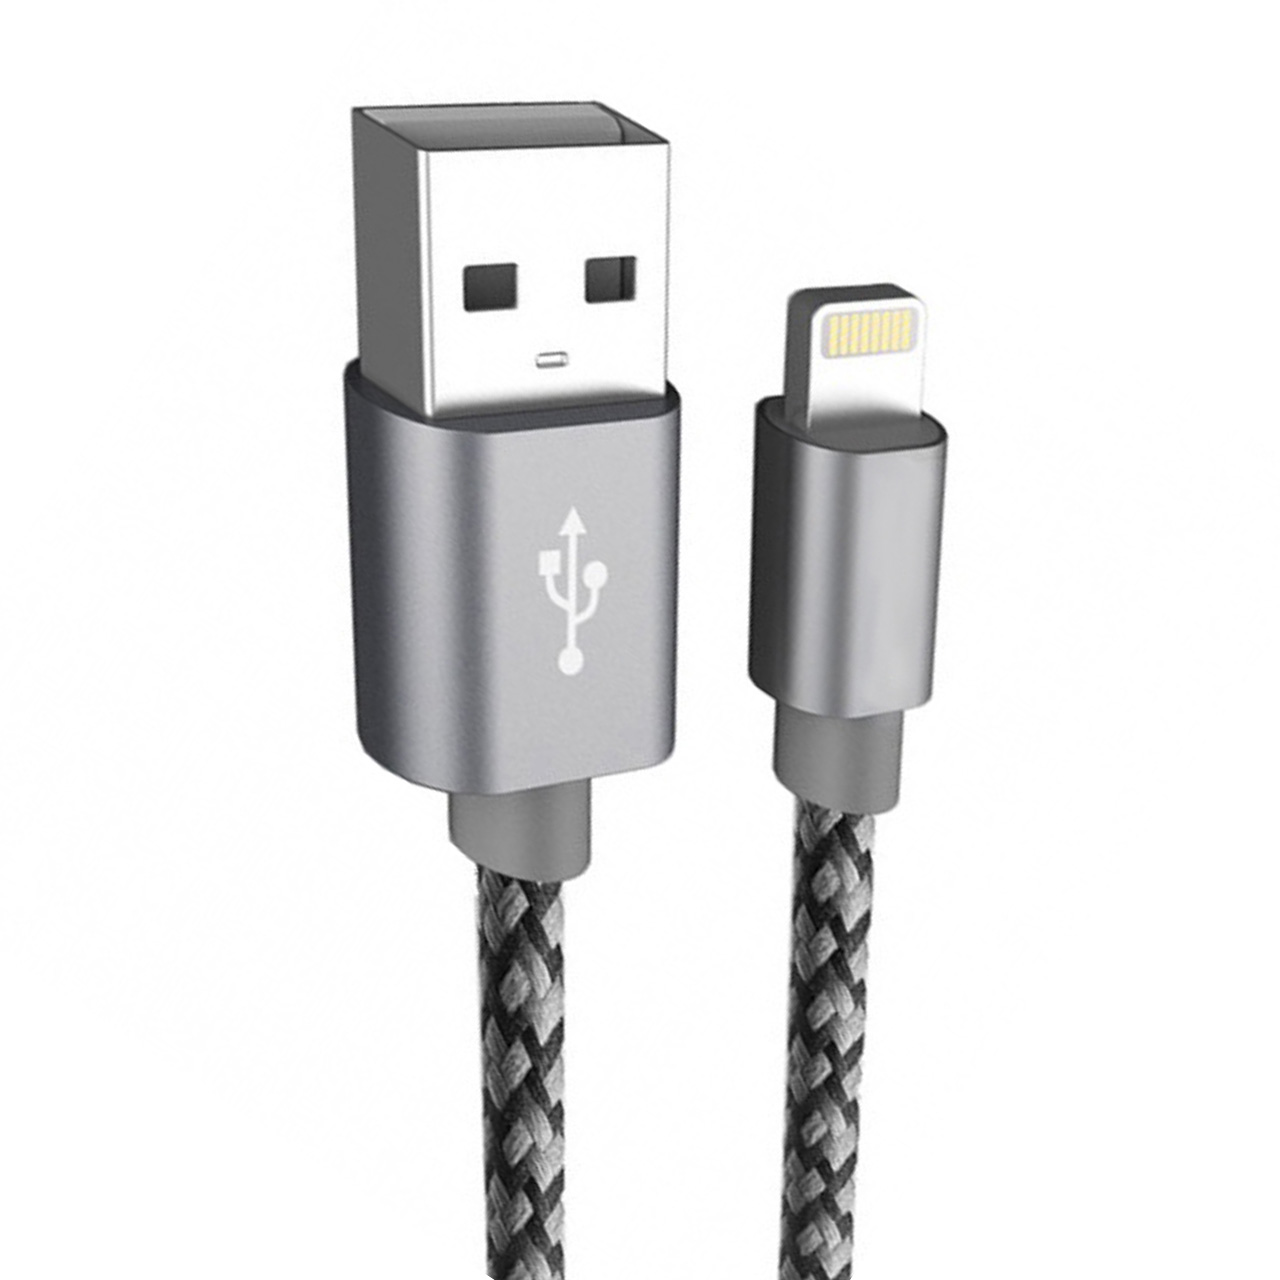 کابل تبدیل USB به لایتنینگ یوجی سو مدل mc-cao27 طول 1 متر